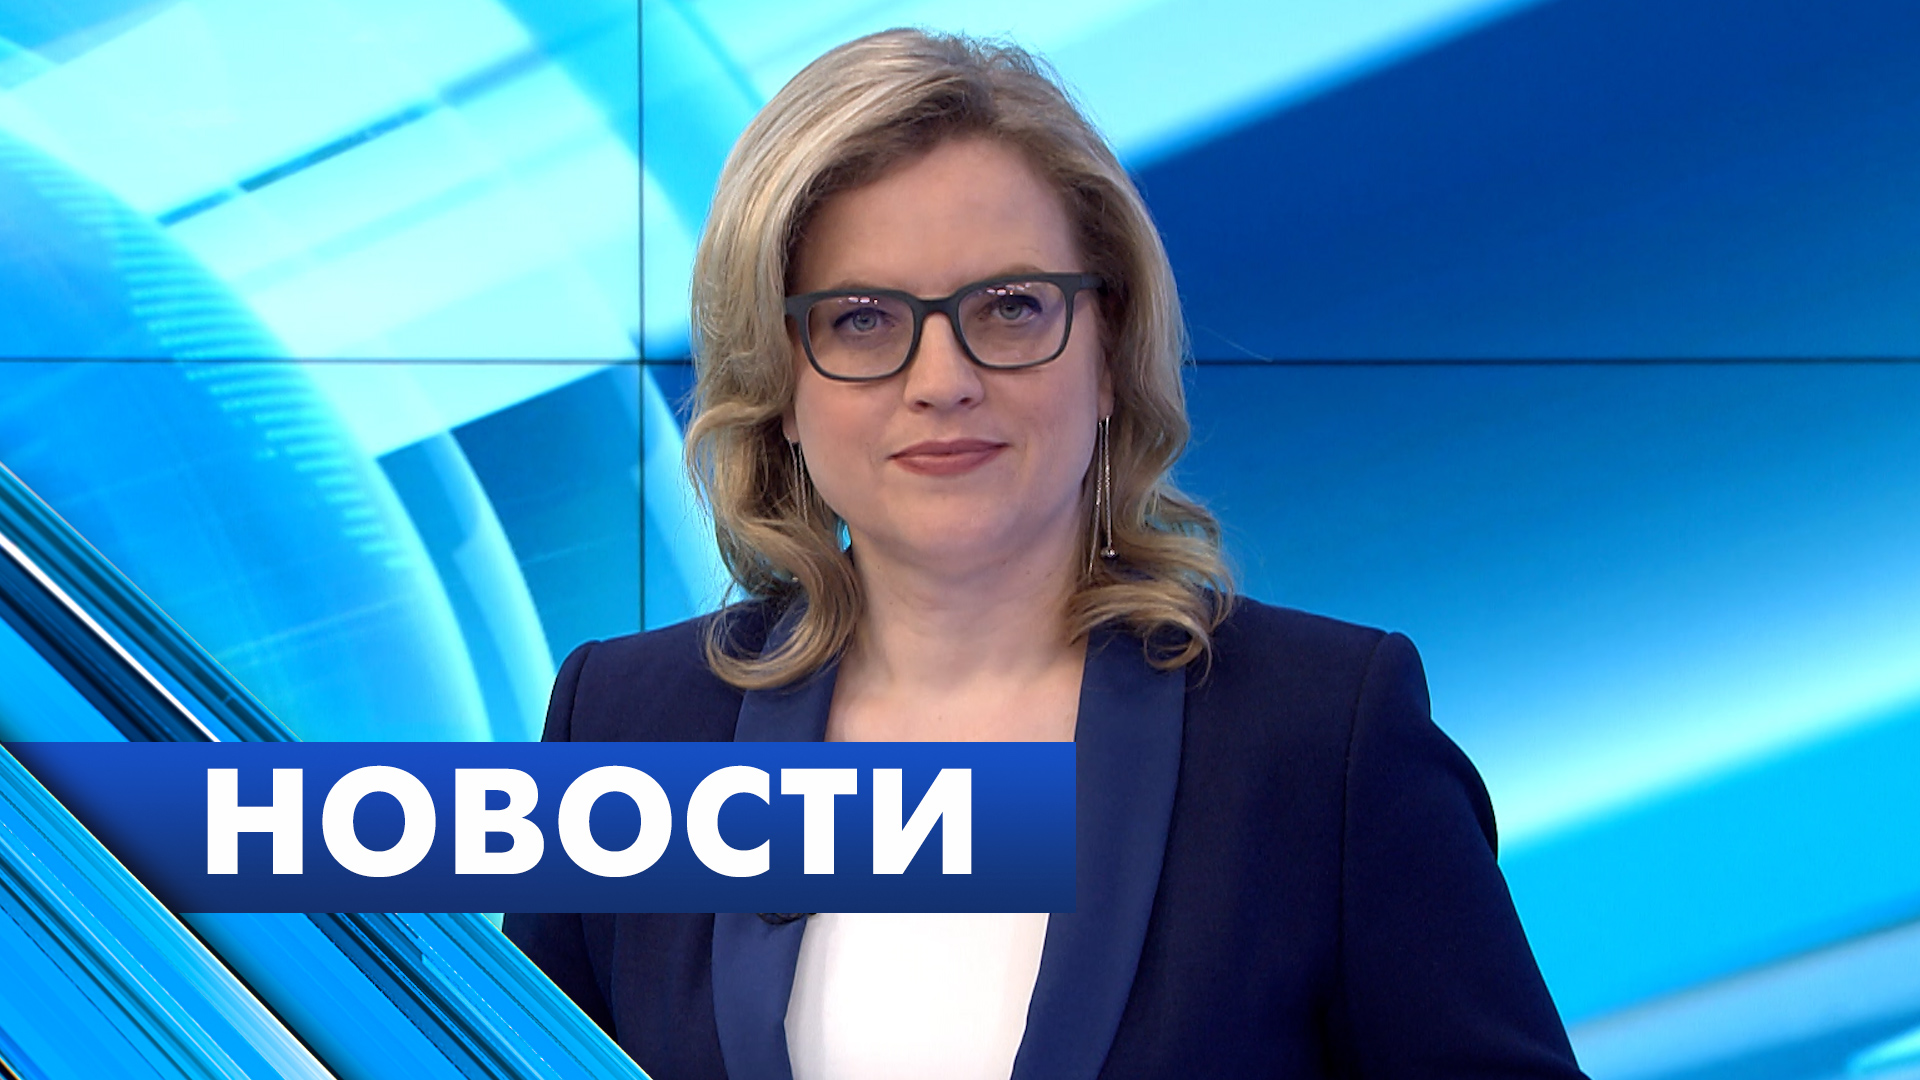 Главные новости Петербурга / 22 апреля